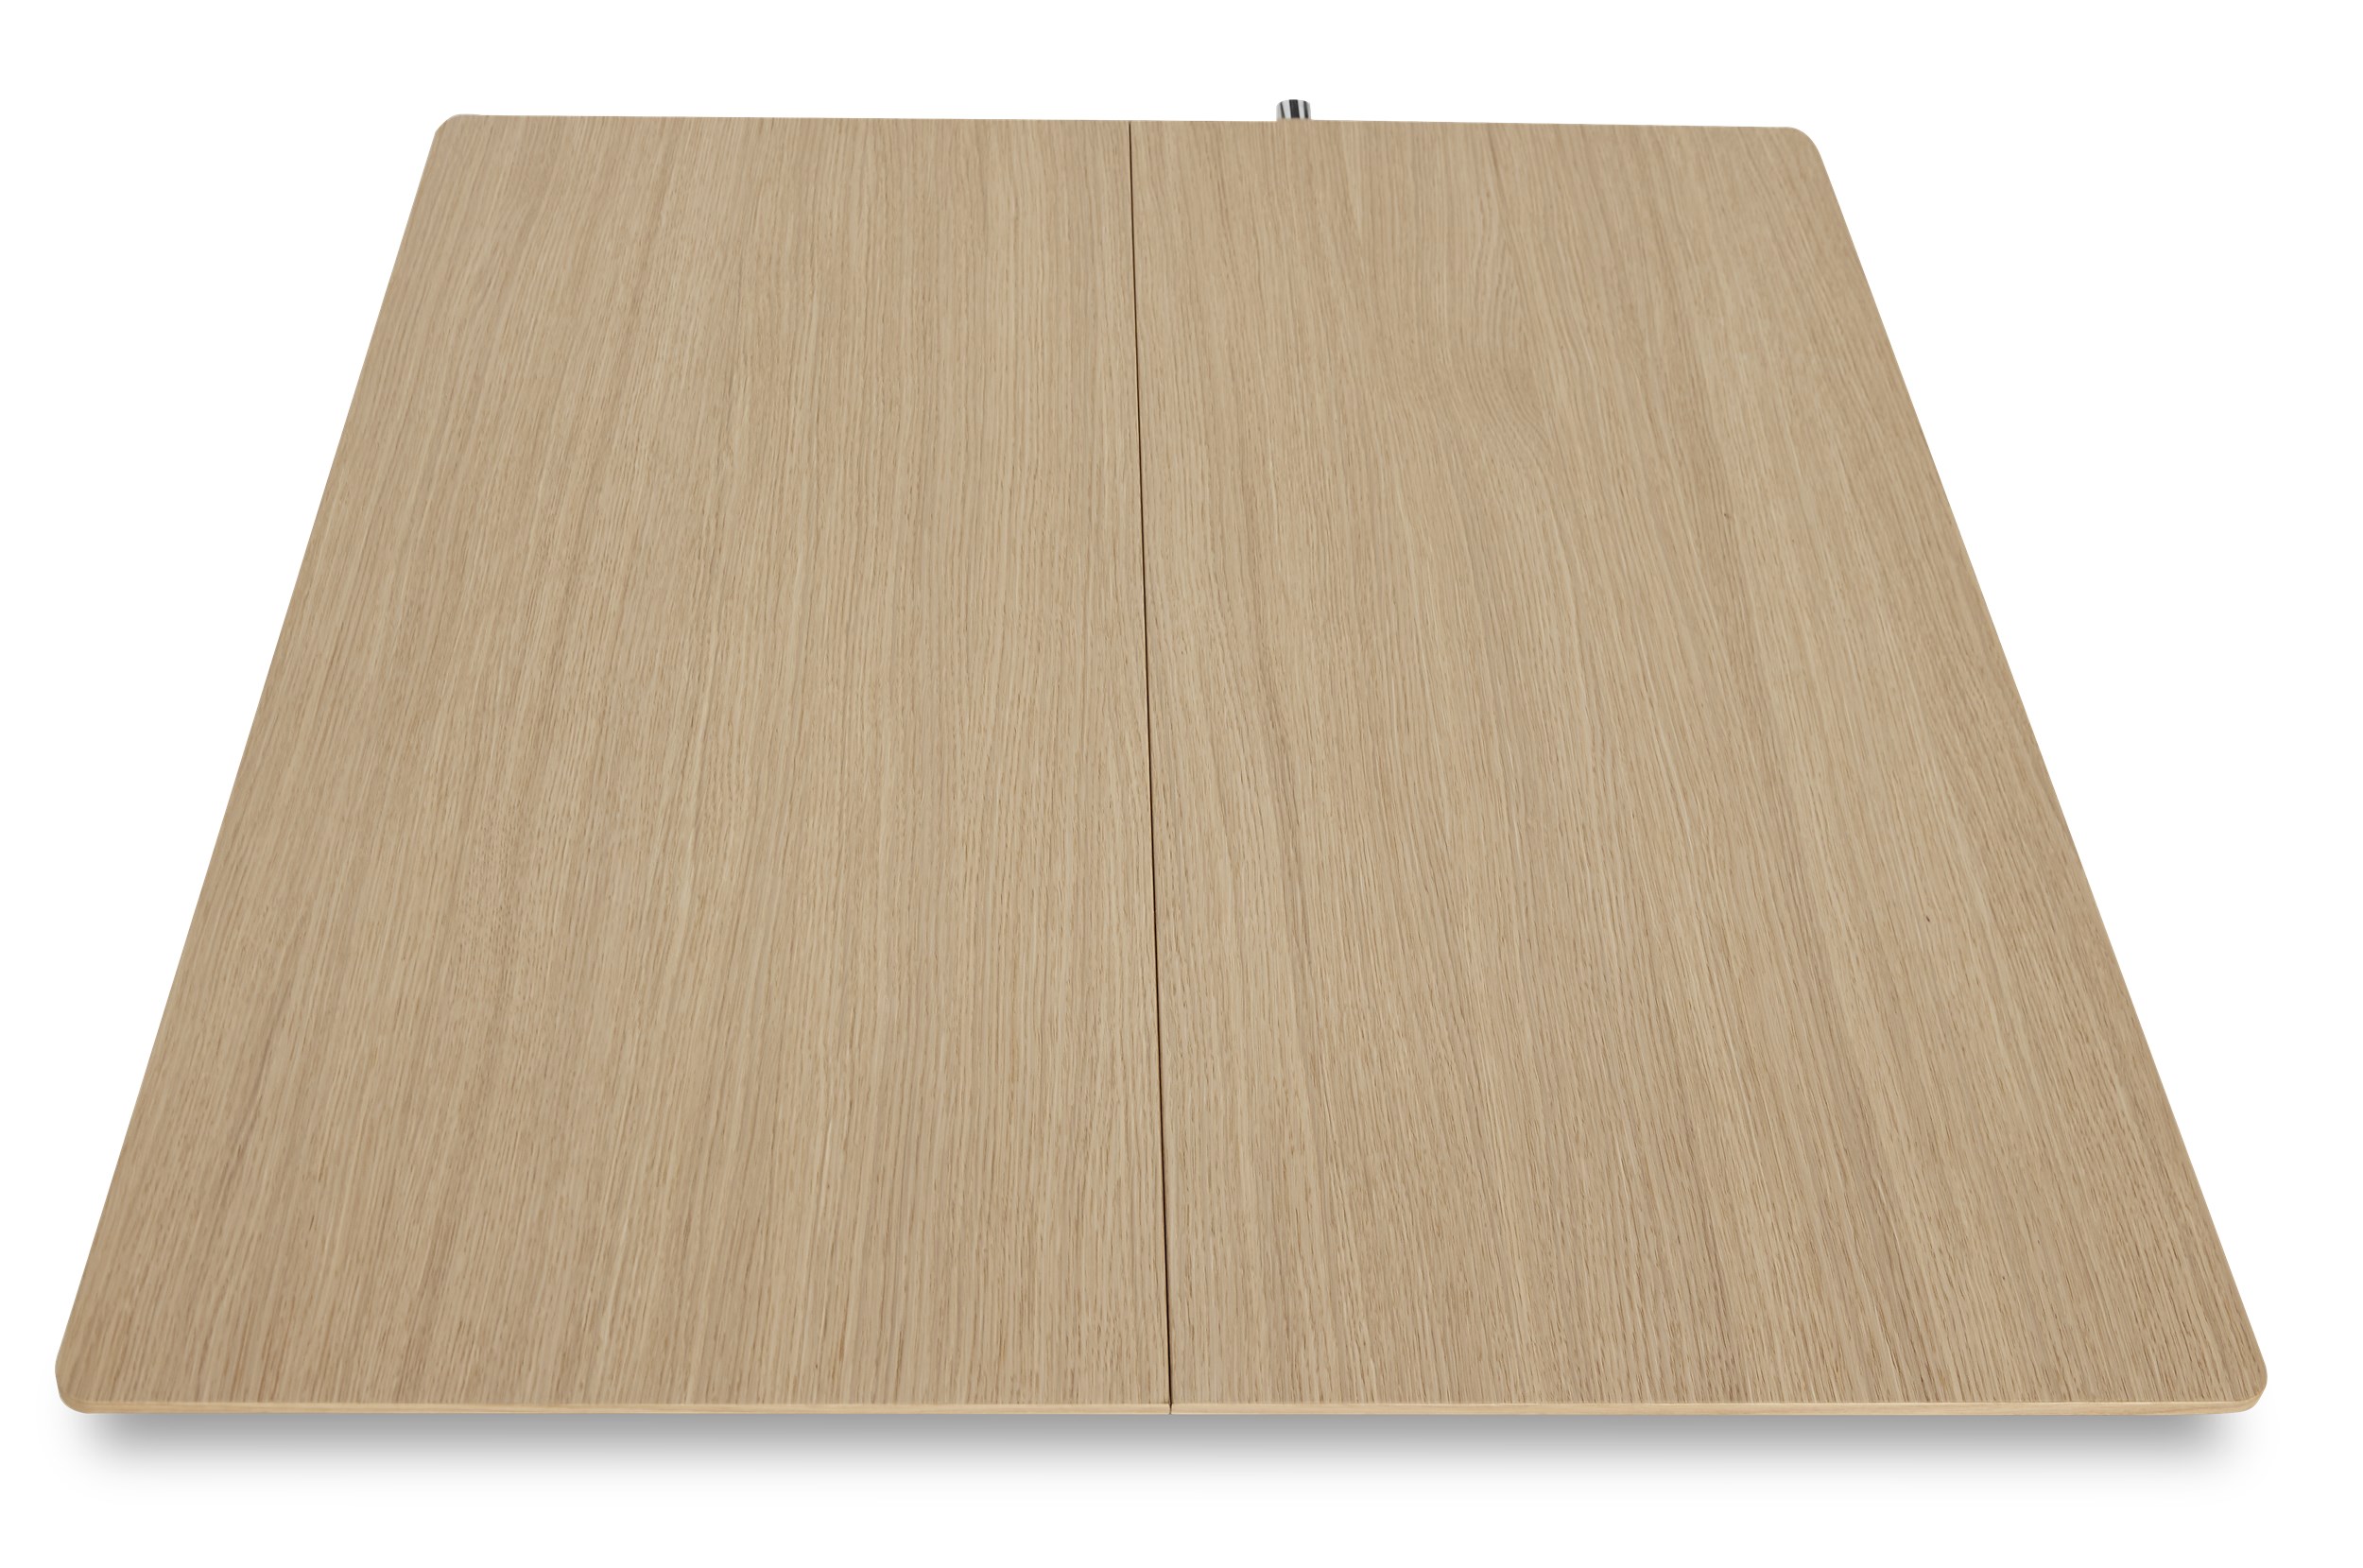 Space Tillægsplade 100,5 x 2 x 90 cm - Hvidpigmenteret matlakeret egefinér, kant i hvidpigmenteret matlakeret eg og 1 stk.